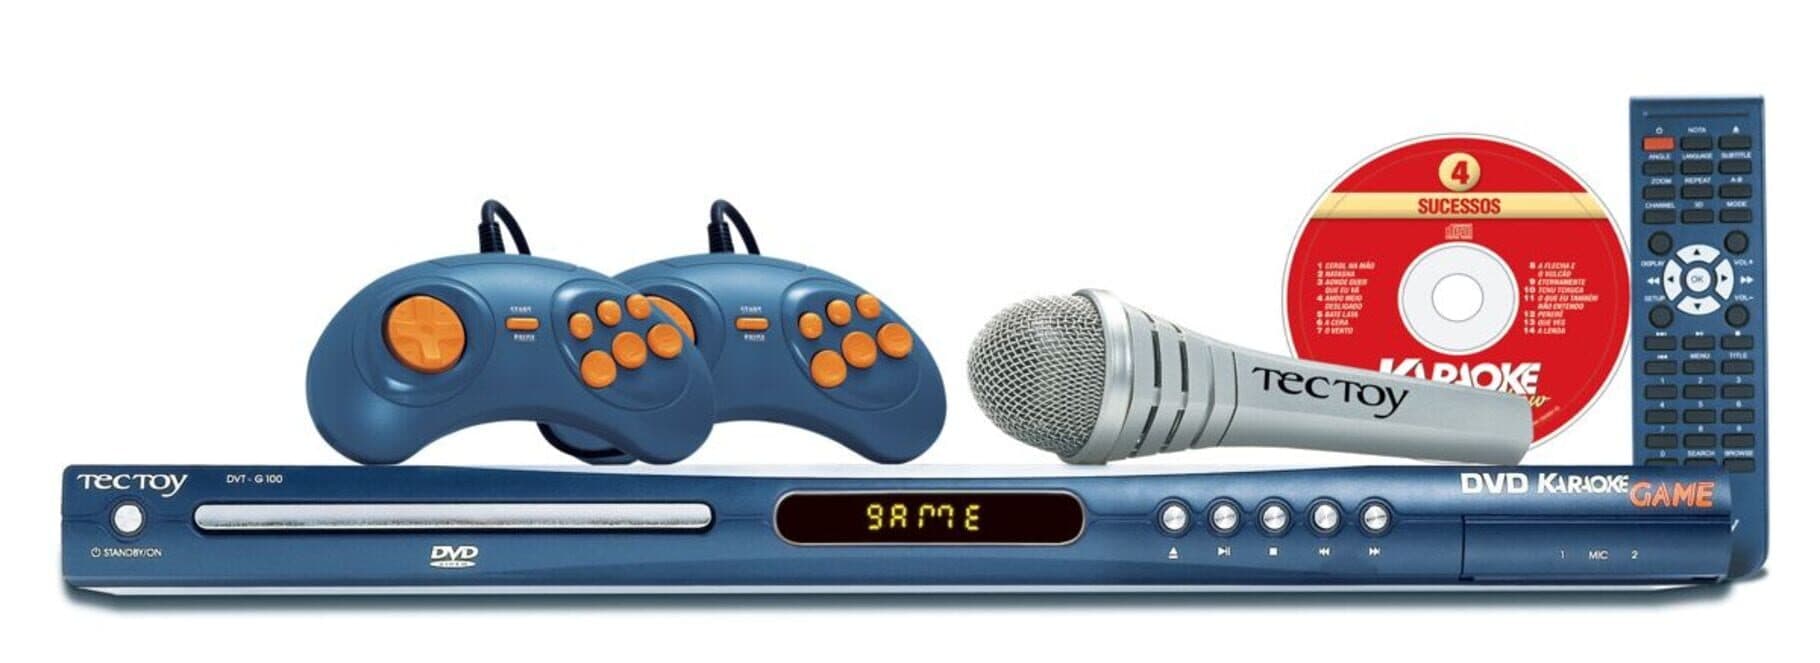 DVD Karaoke Game DVT-G100 Image